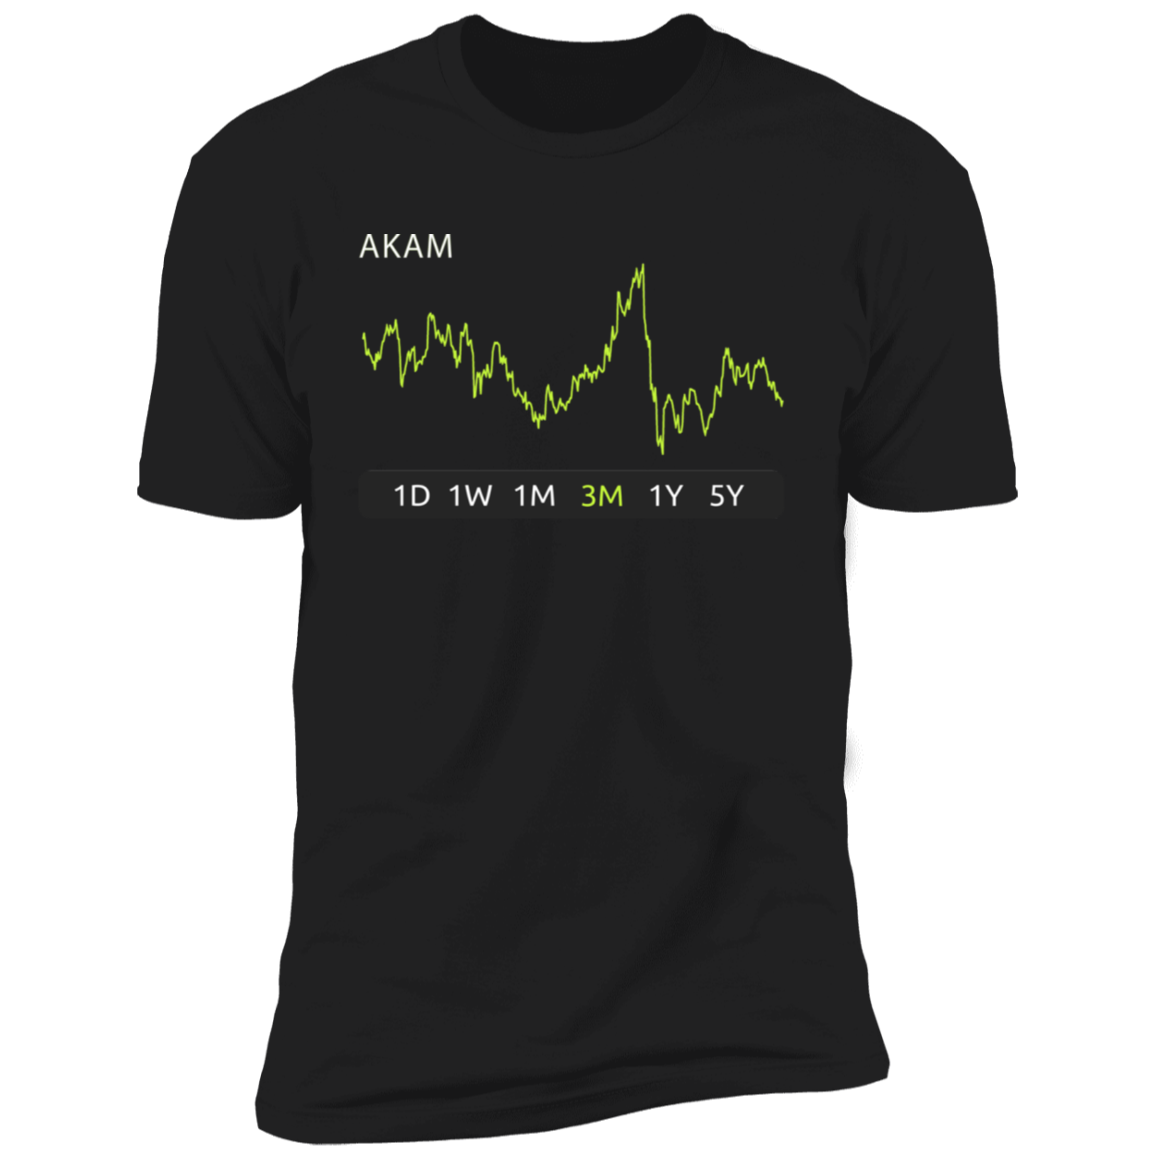 AKAM Stock 3m Premium T-Shirt